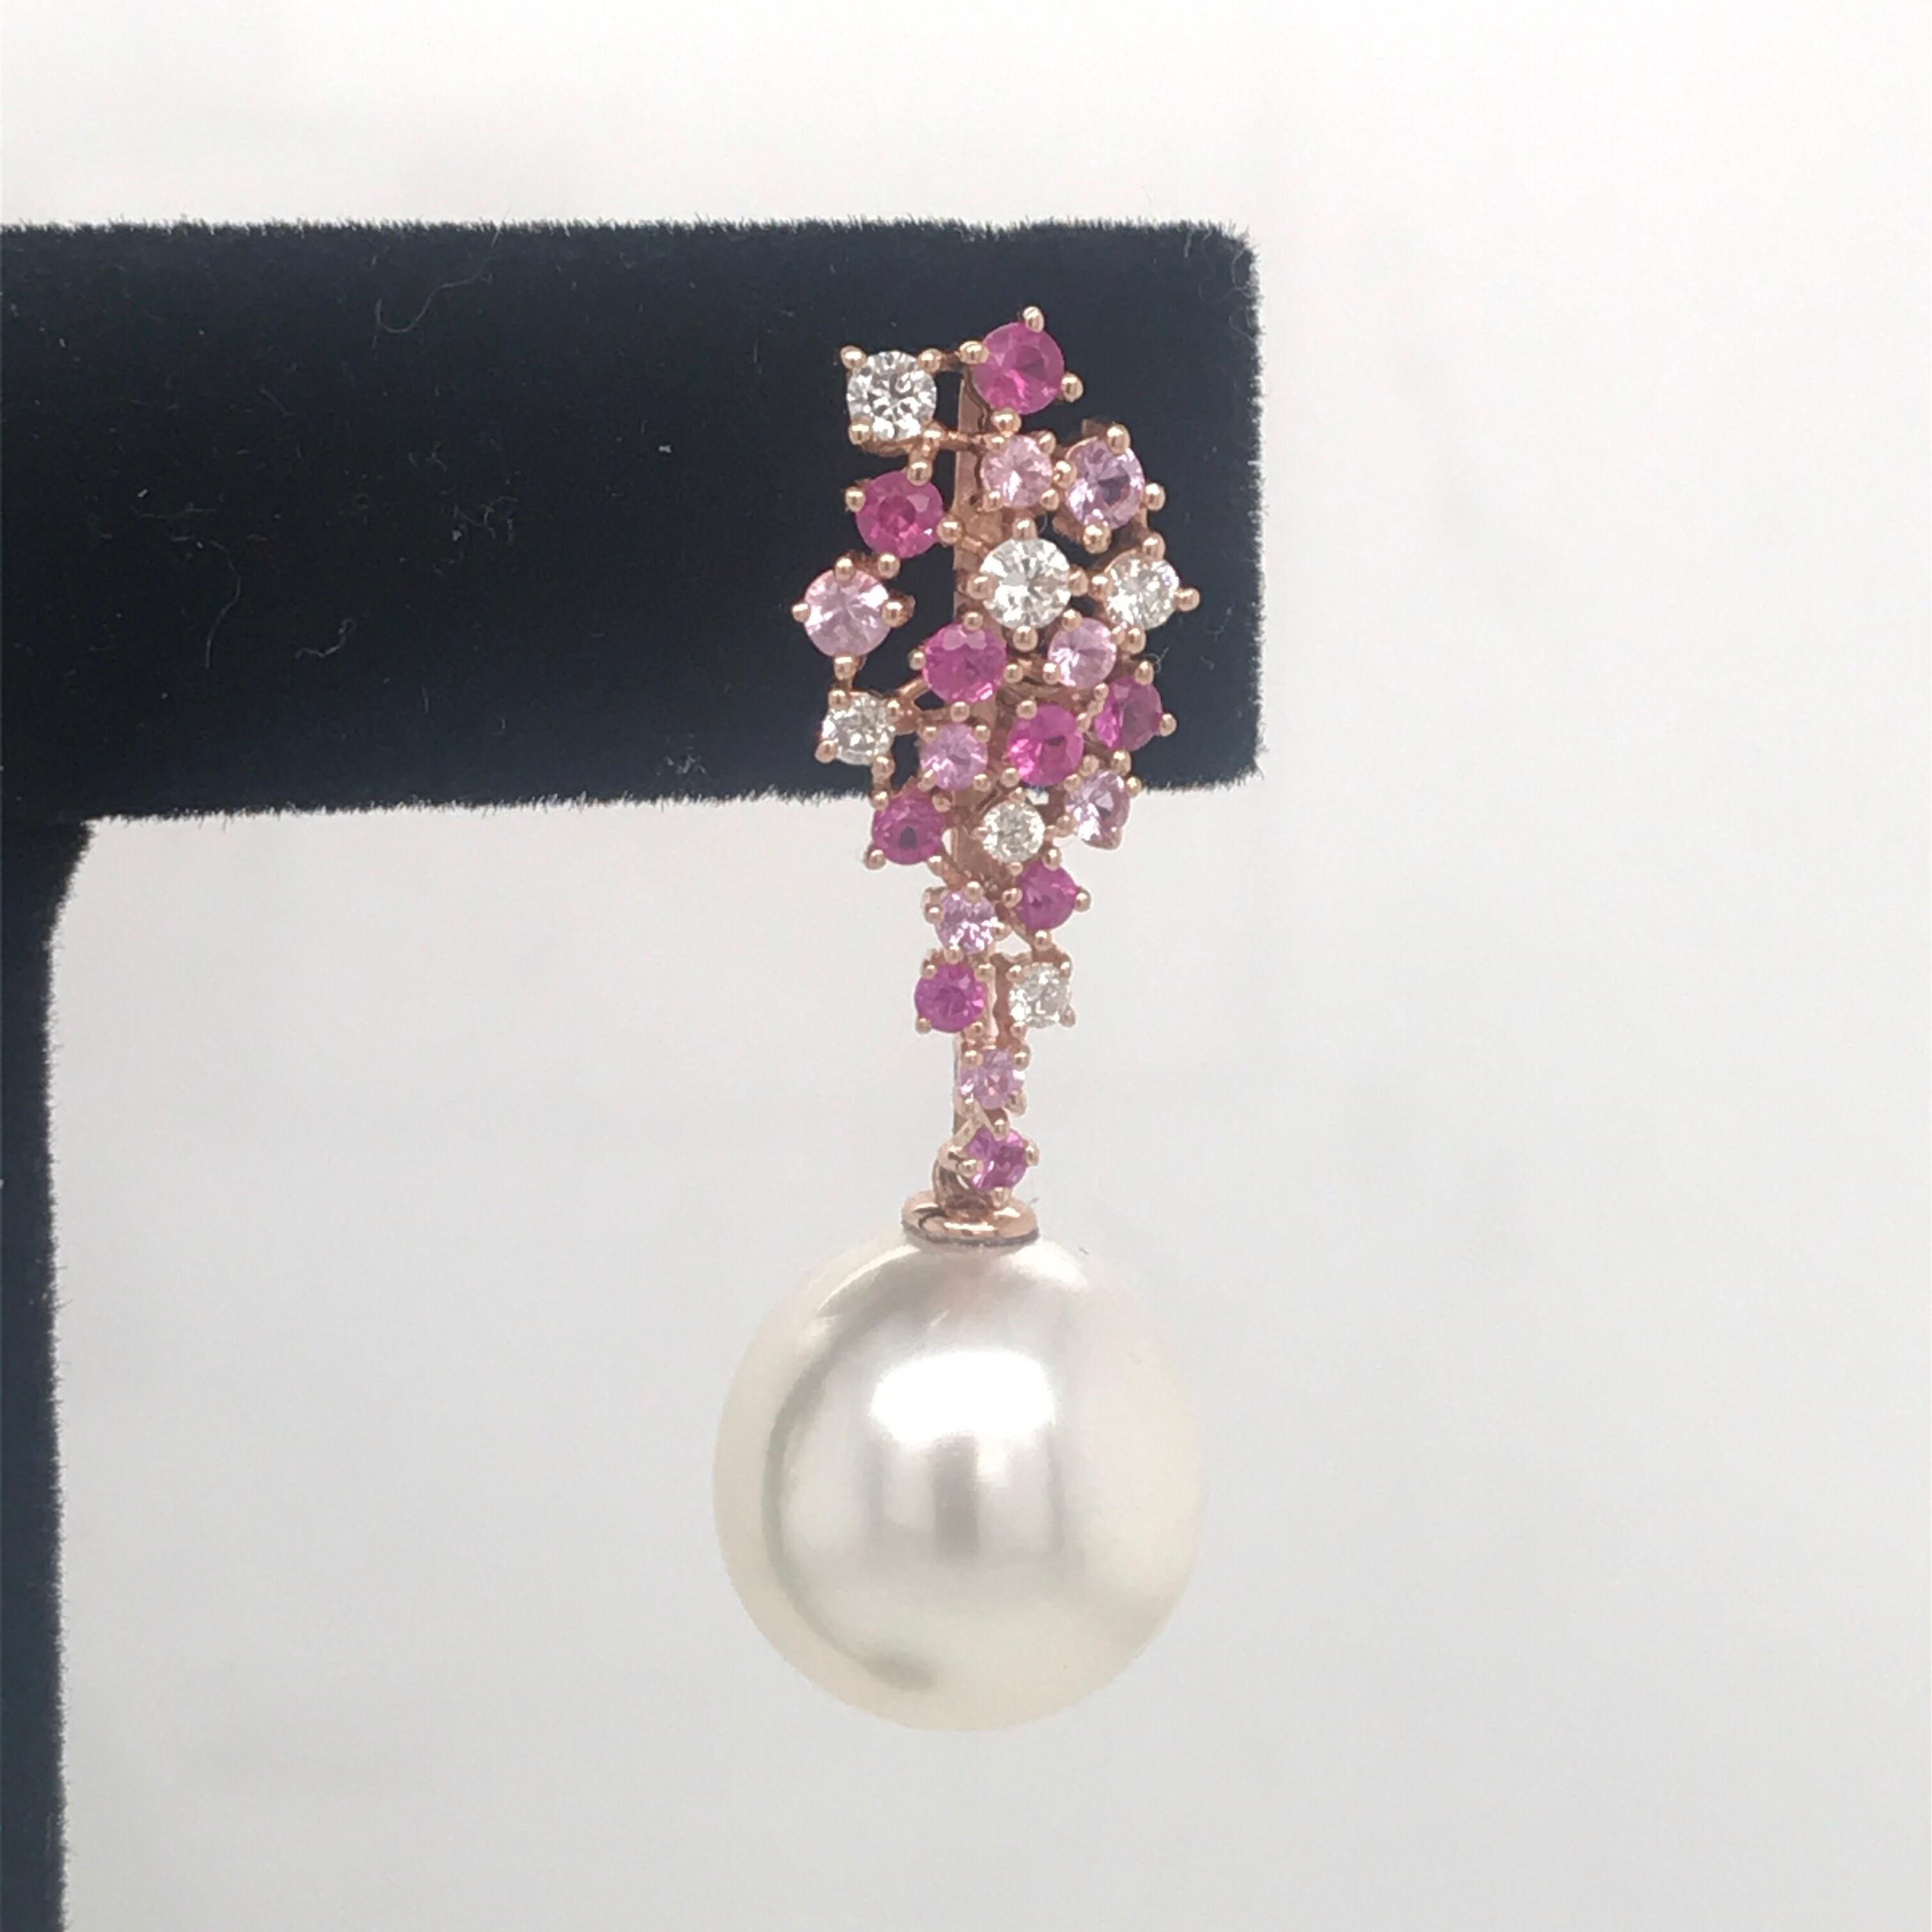 boucles d'oreilles pendantes en or rose 18 carats comprenant une grappe de 34 saphirs roses pesant 1.07 carats et 12 diamants pesant 0.34 carats avec deux perles des mers du Sud mesurant 12-13 mm.